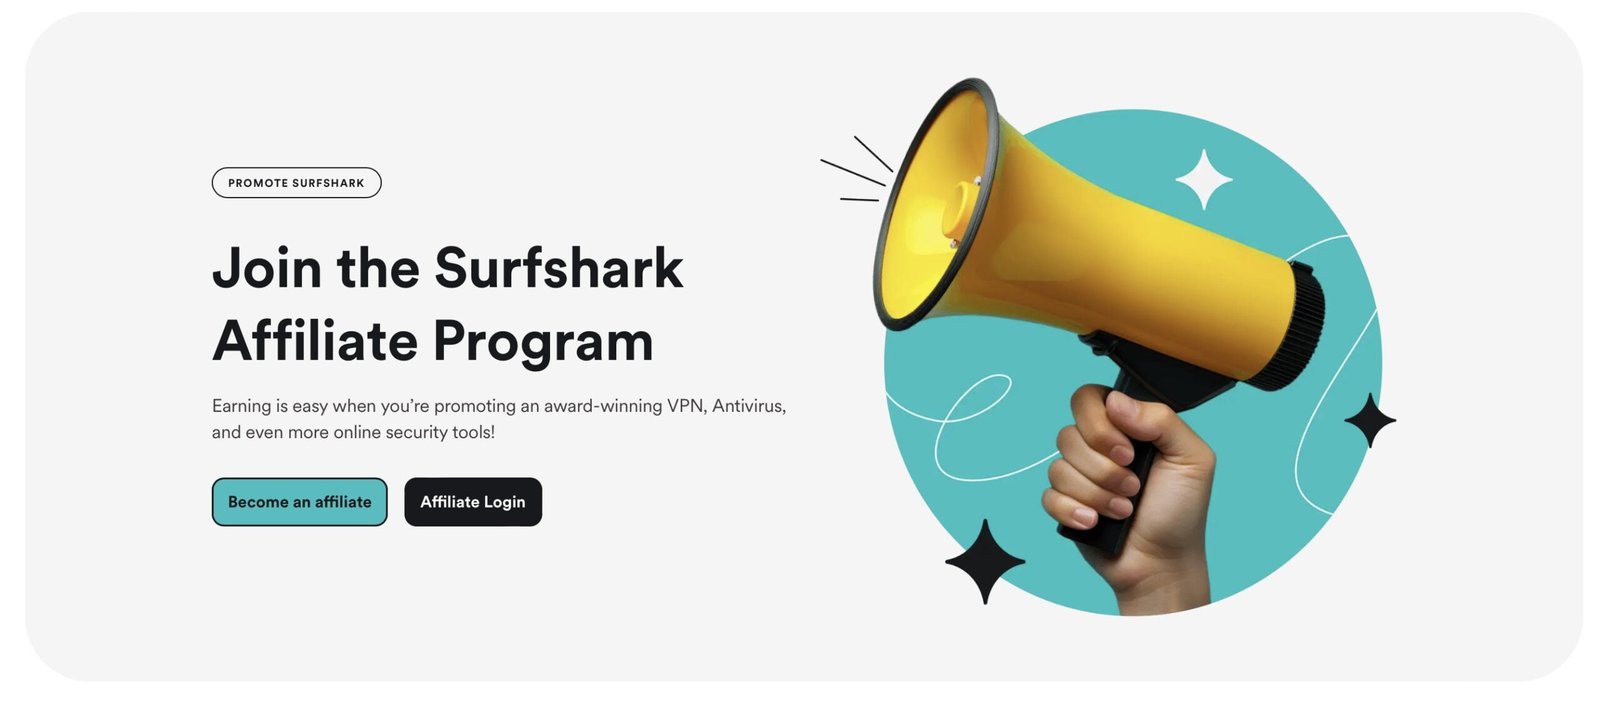 Surfshark Affiliate Program details